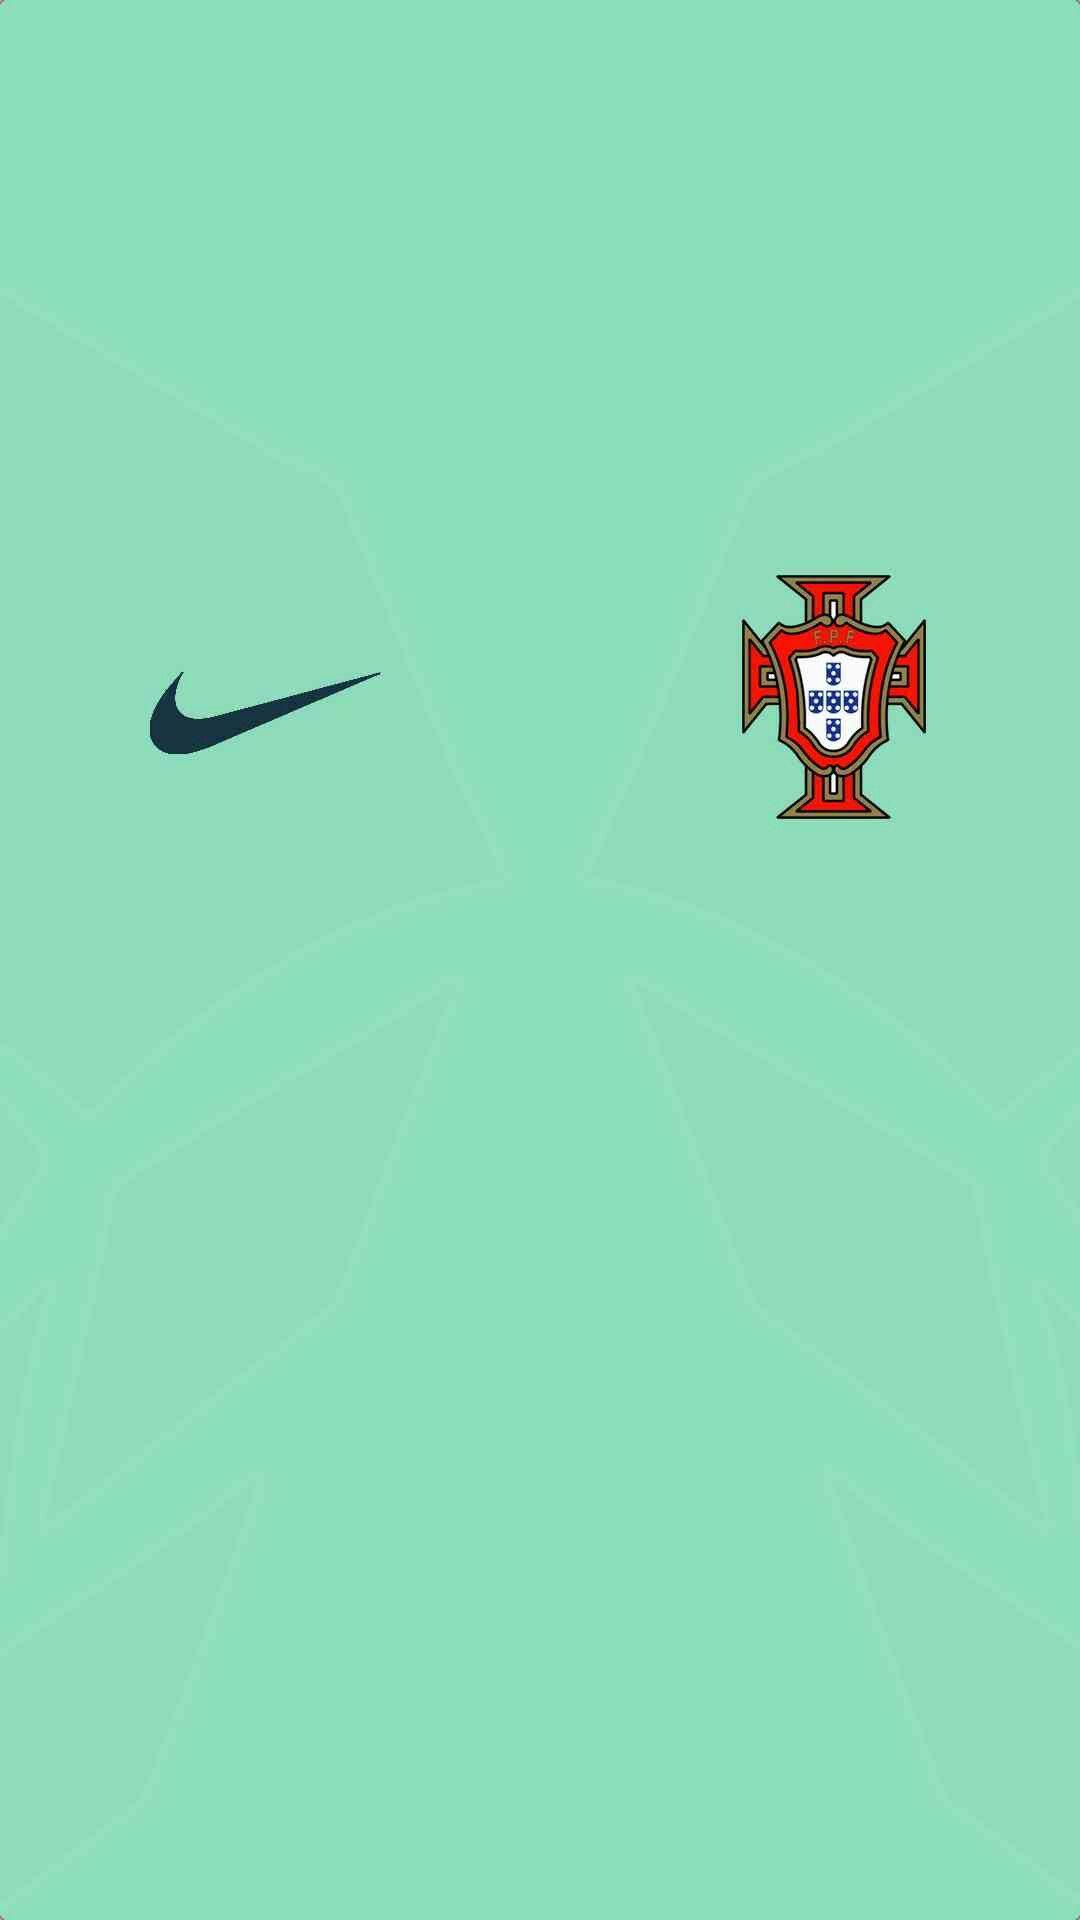 Portugal wallpaper. Camisetas de fútbol, Equipo de fútbol, Playeras de futbol